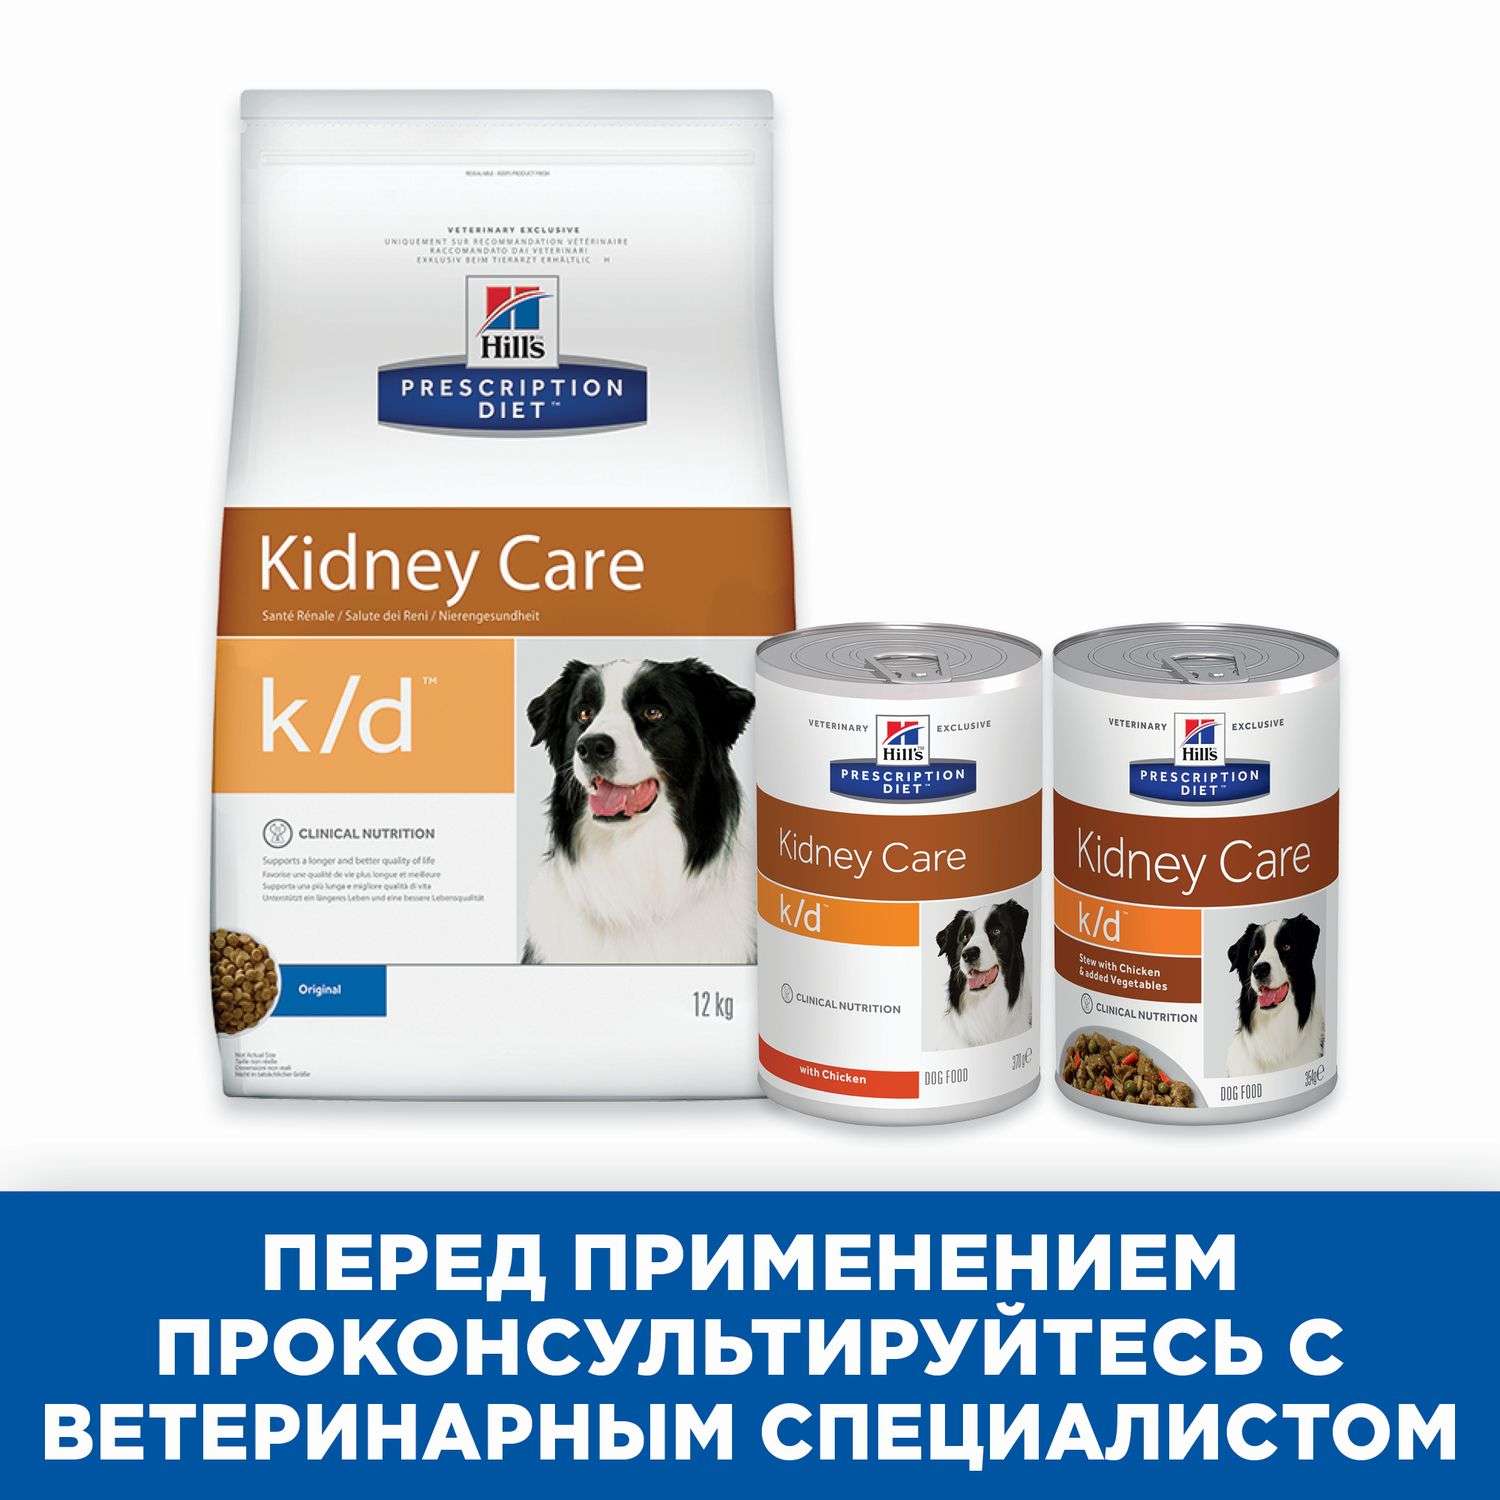 Корм для собак HILLS 354г Prescription Diet k/d при лечении заболеваний почек рагу с курицей и добавлением овощей - фото 5